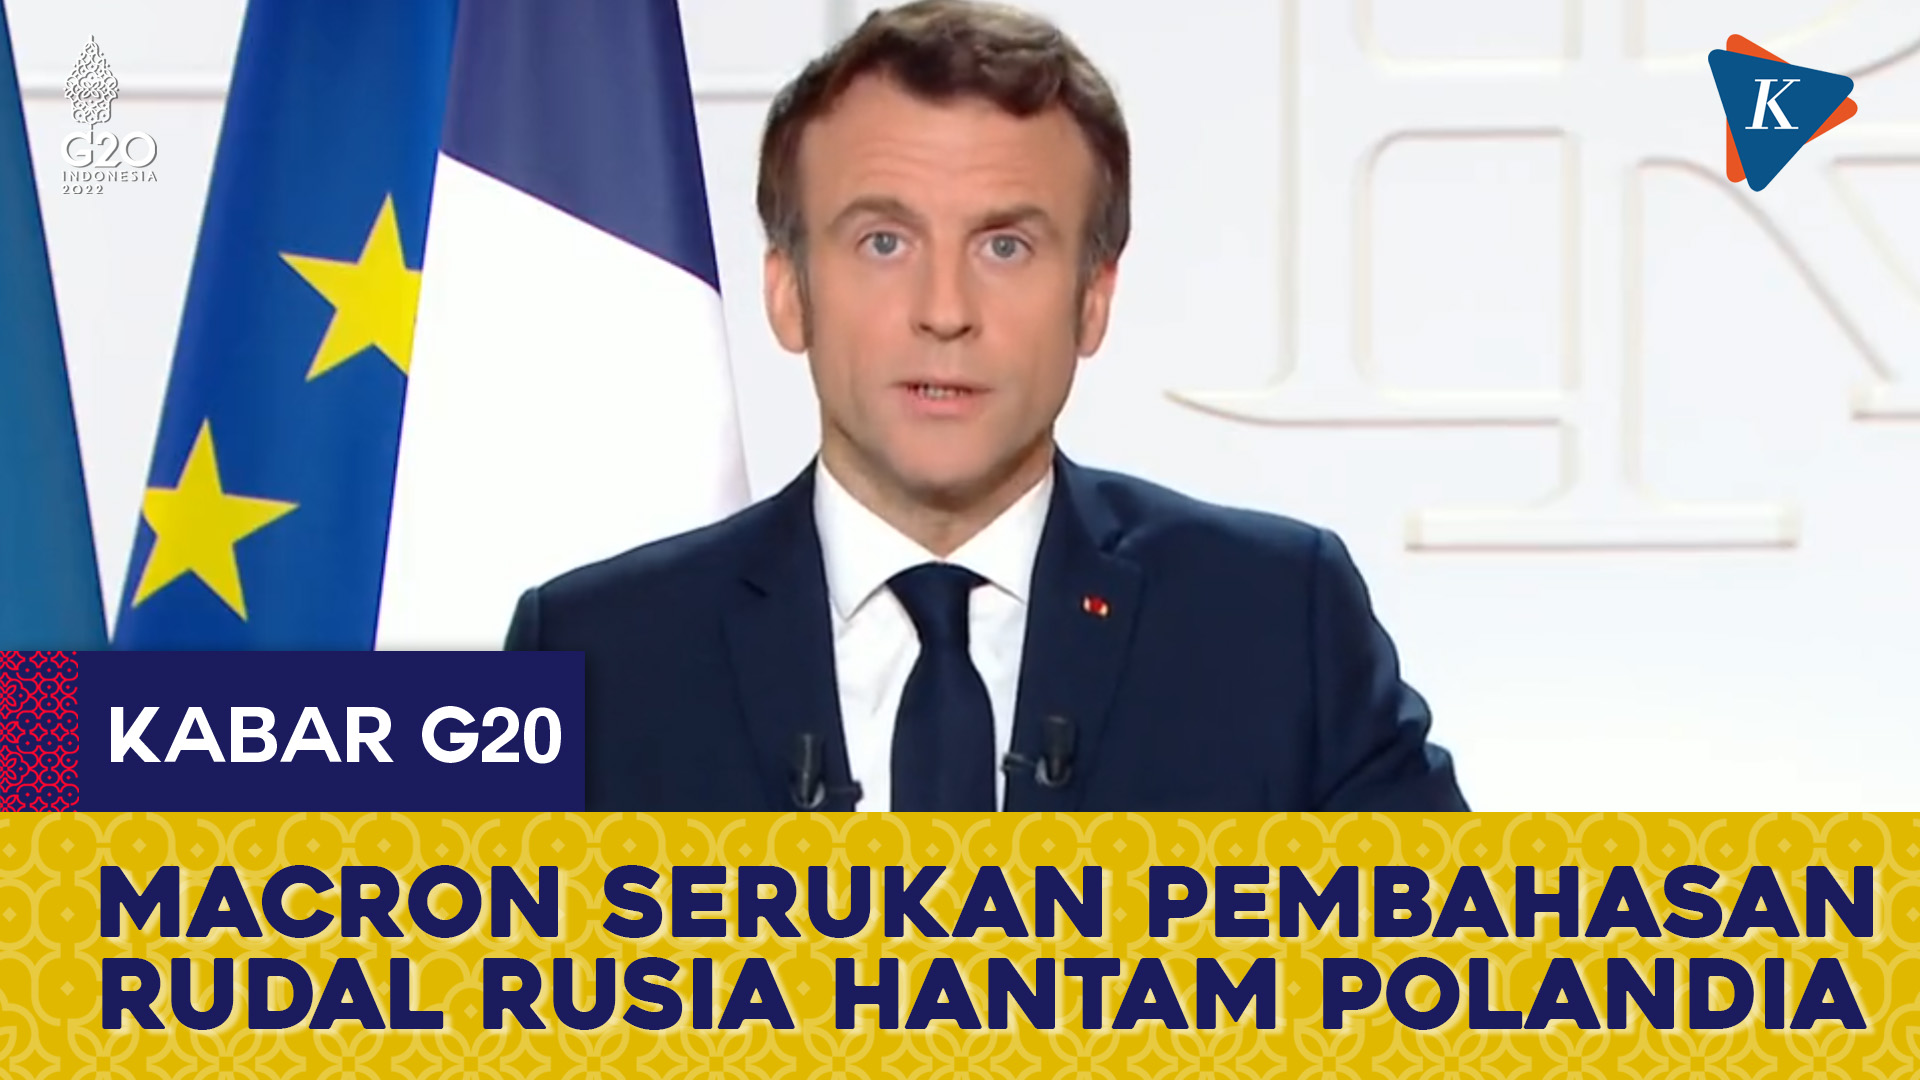 Macron Serukan Pembahasan Rudal Rusia Hantam Polandia di KTT G20